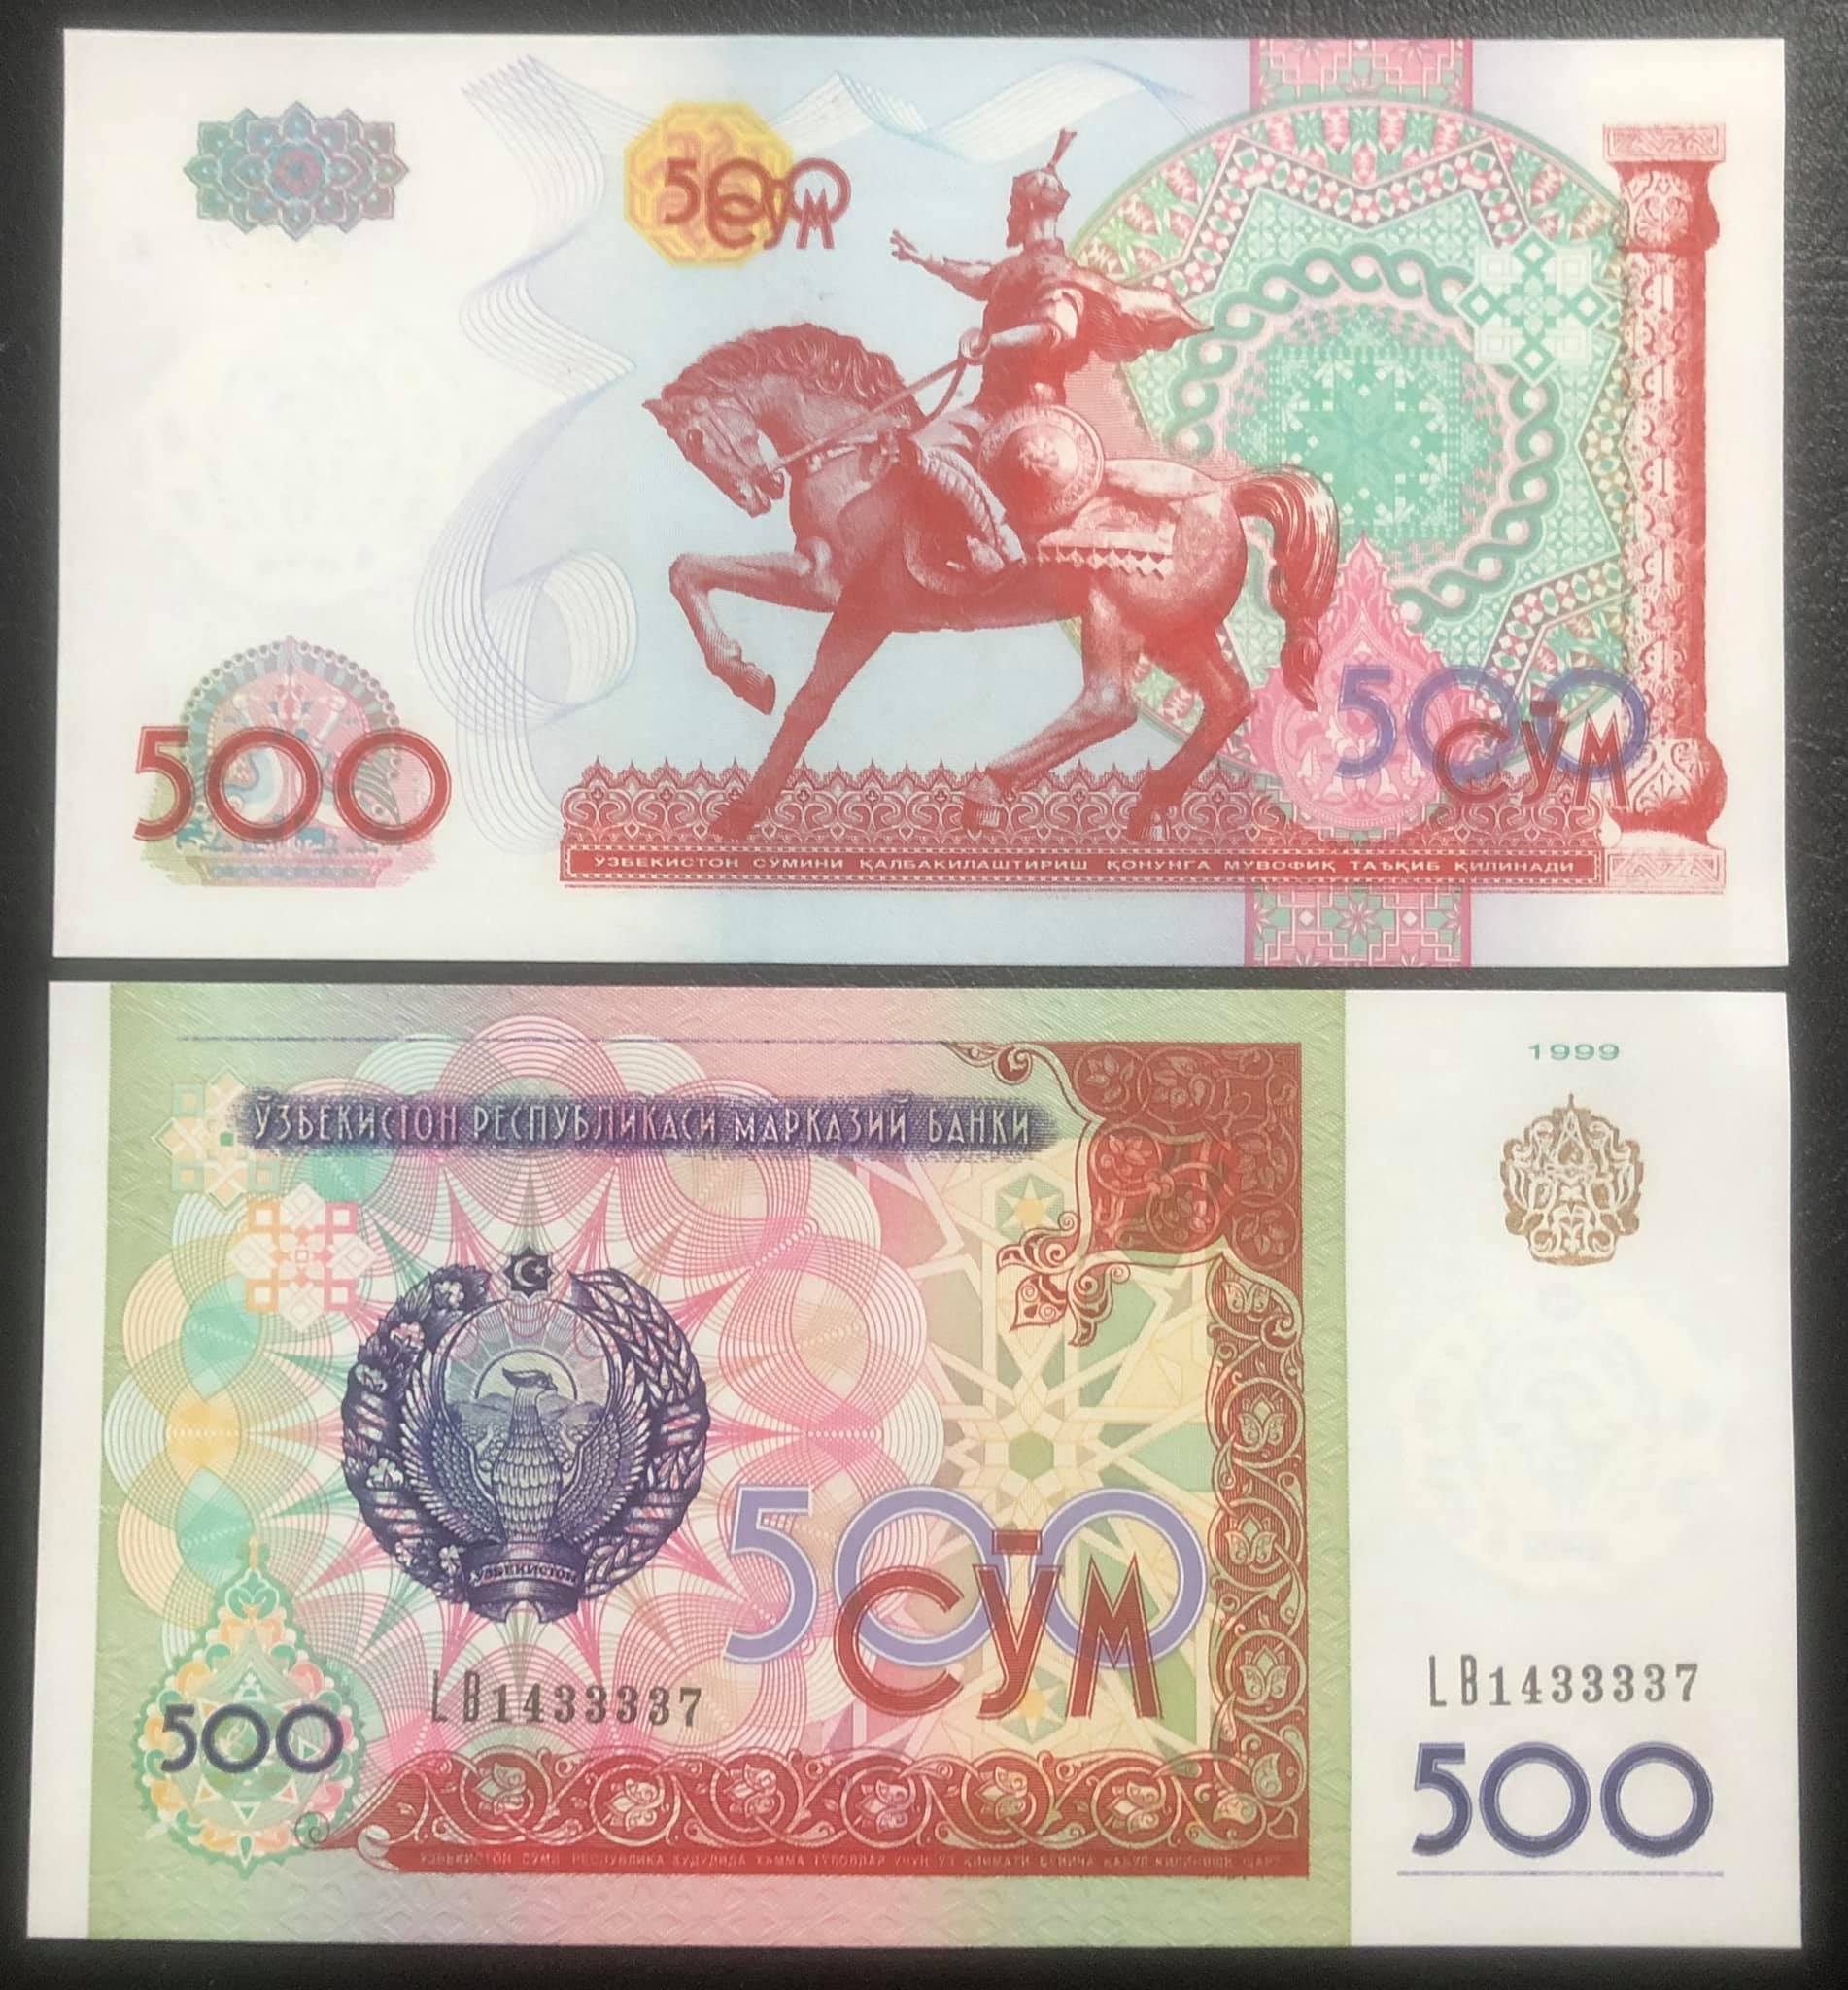 Tiền con ngựa Mã đáo thành công của Uzbekistan 500 sum